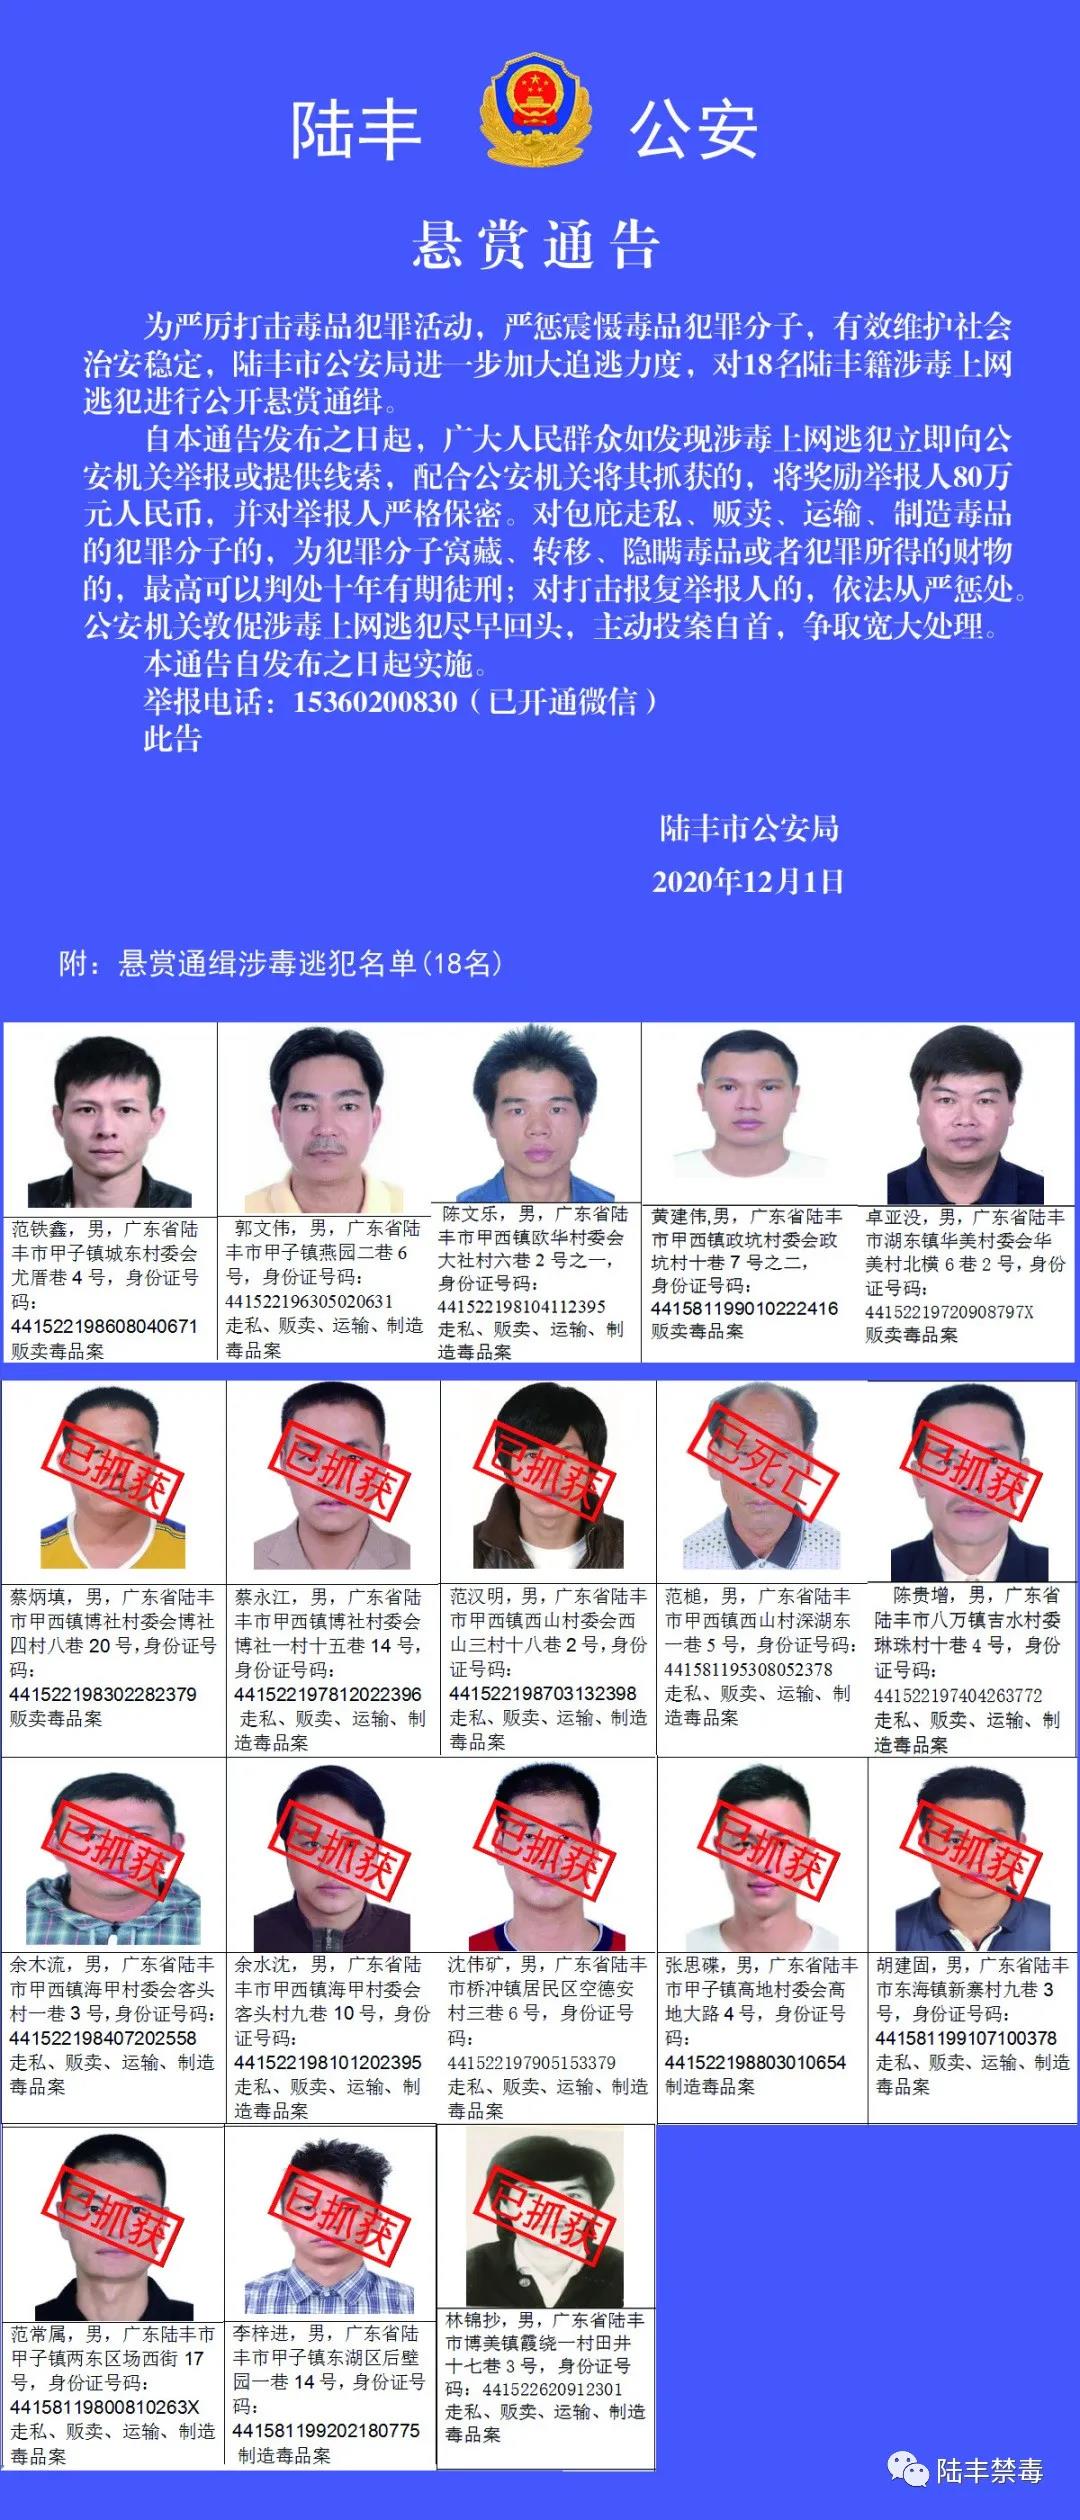 广东陆丰警方悬赏通缉5名涉毒逃犯,举报1人奖励80万